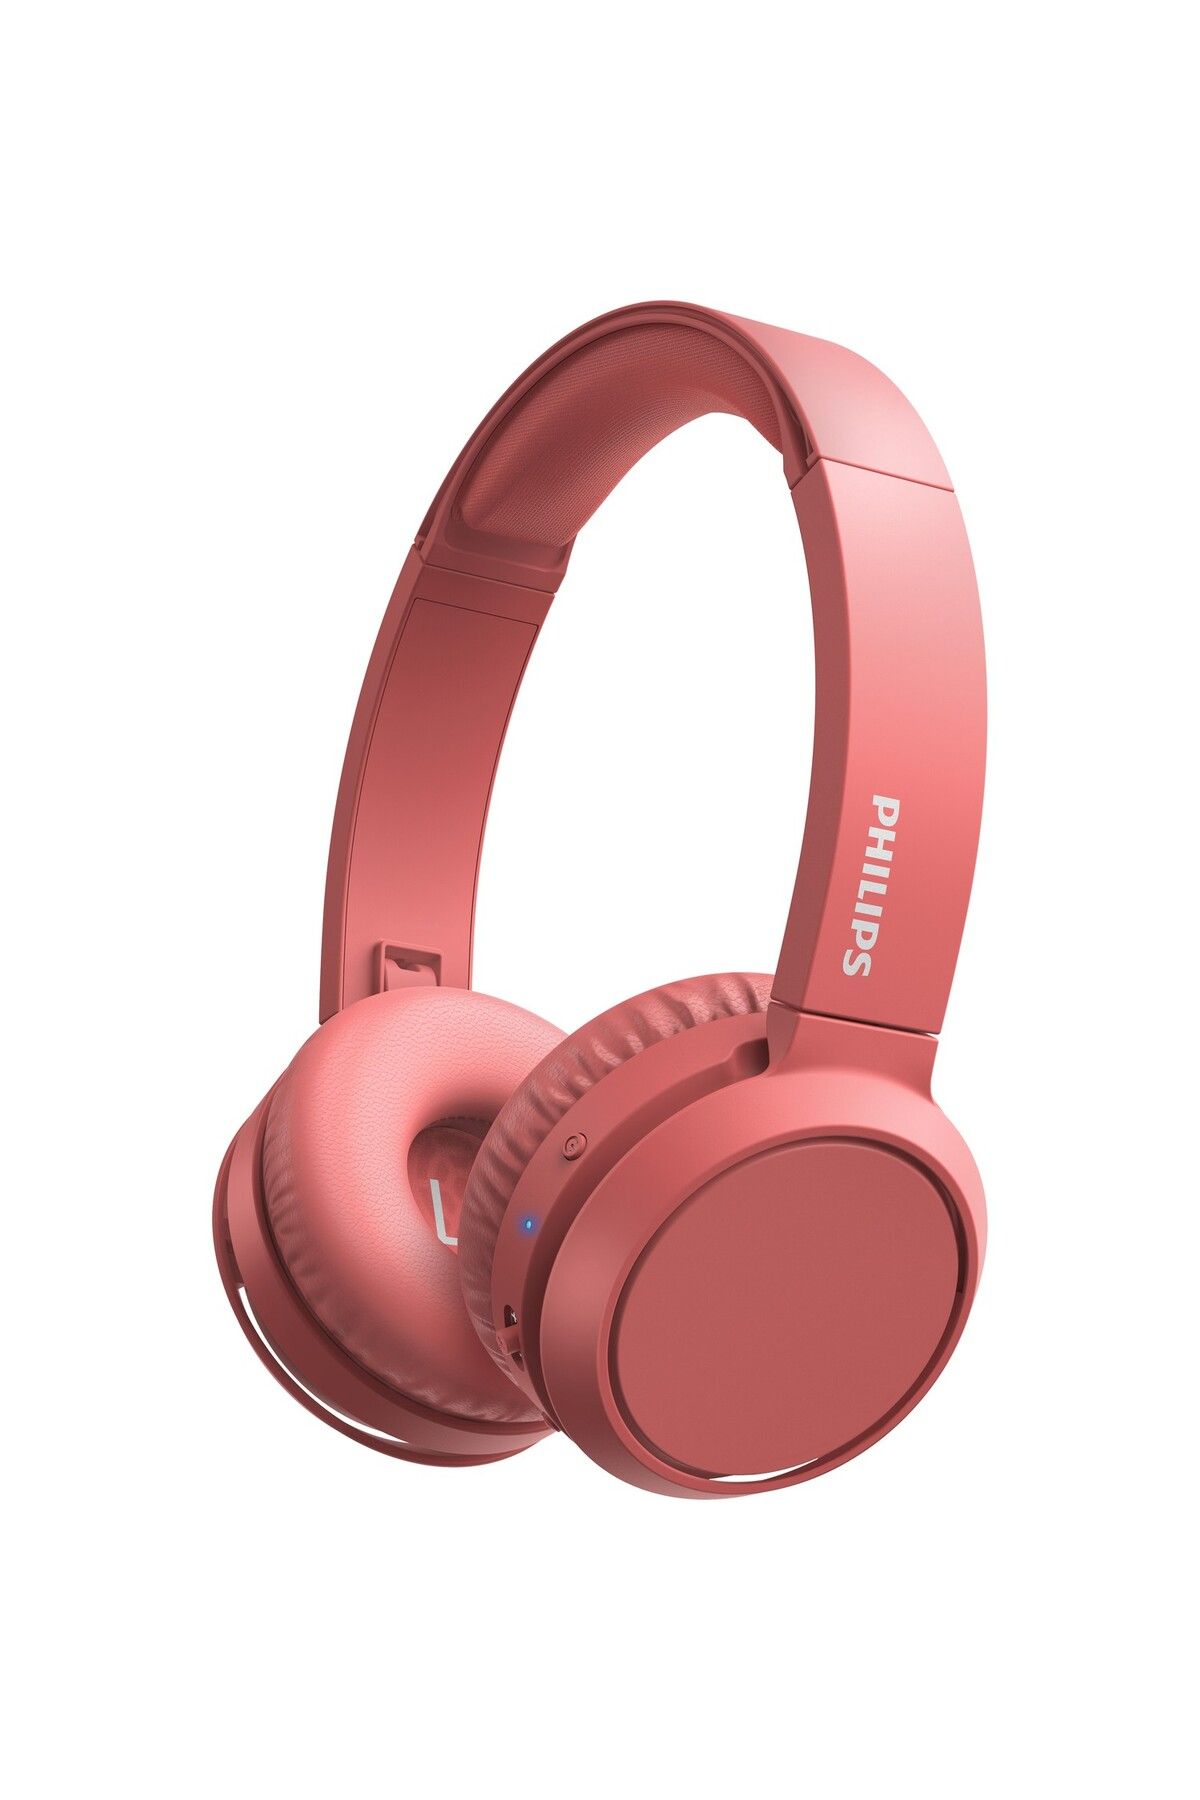 Philips Tah4205rd Kablosuz Kulak Üstü Kulaklık (mikrofonlu) Kırmızı - 29 Saat